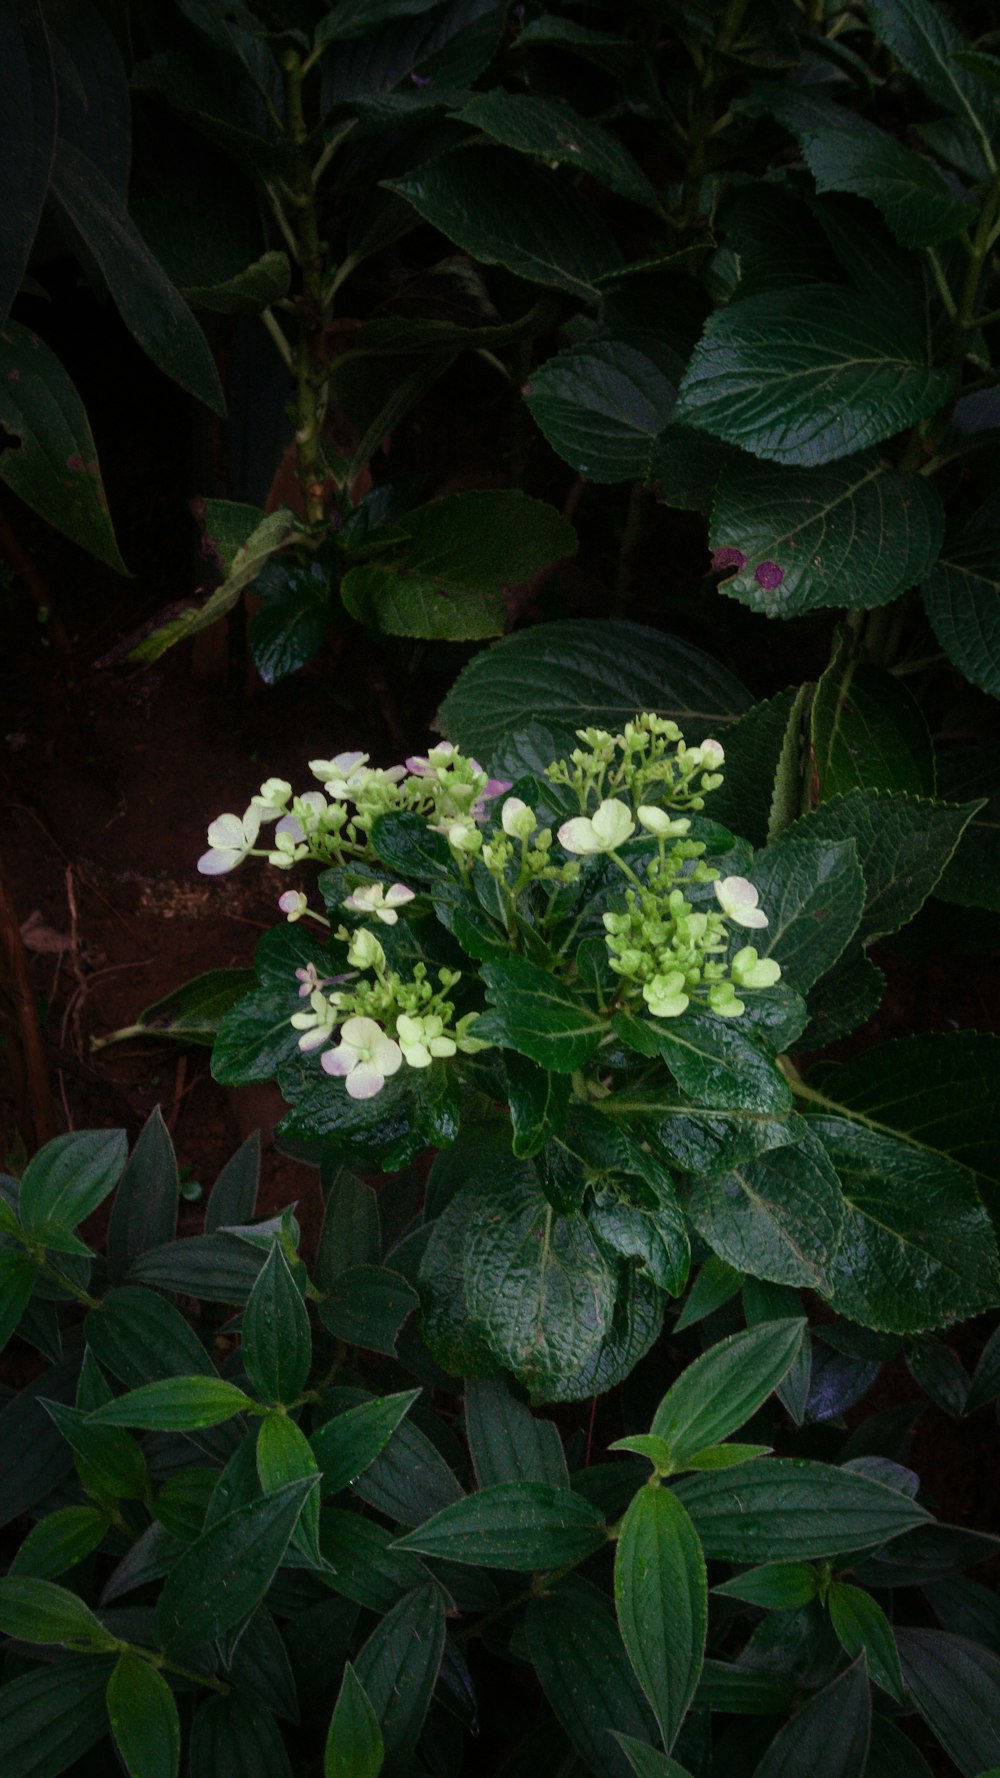 un arbusto de hojas verdes con flores blancas